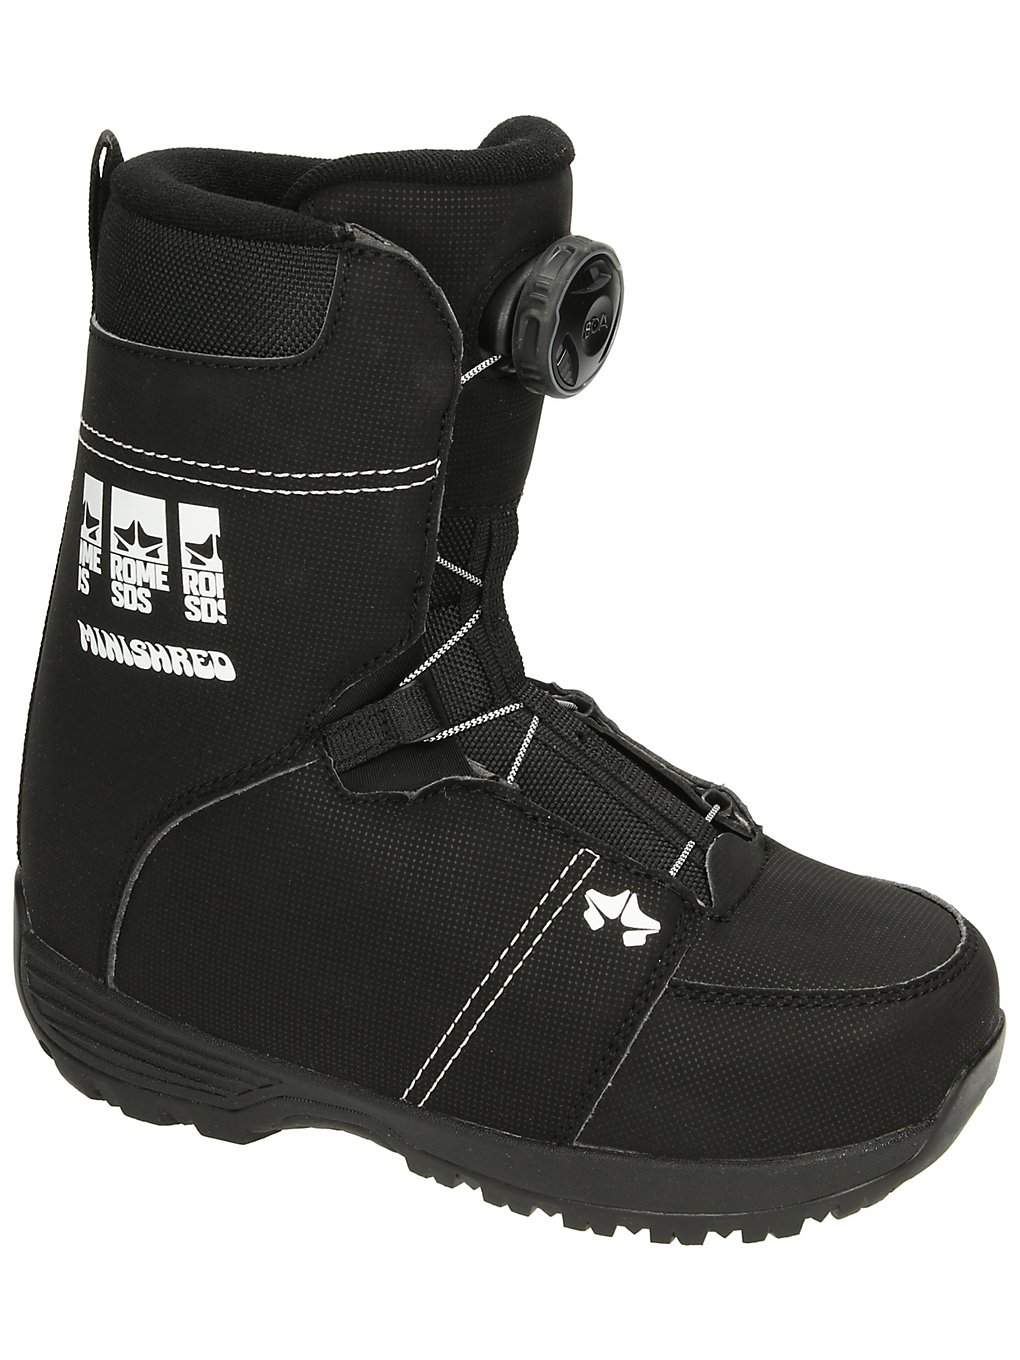 Rome Minishred 2022 Snowboard Boots black